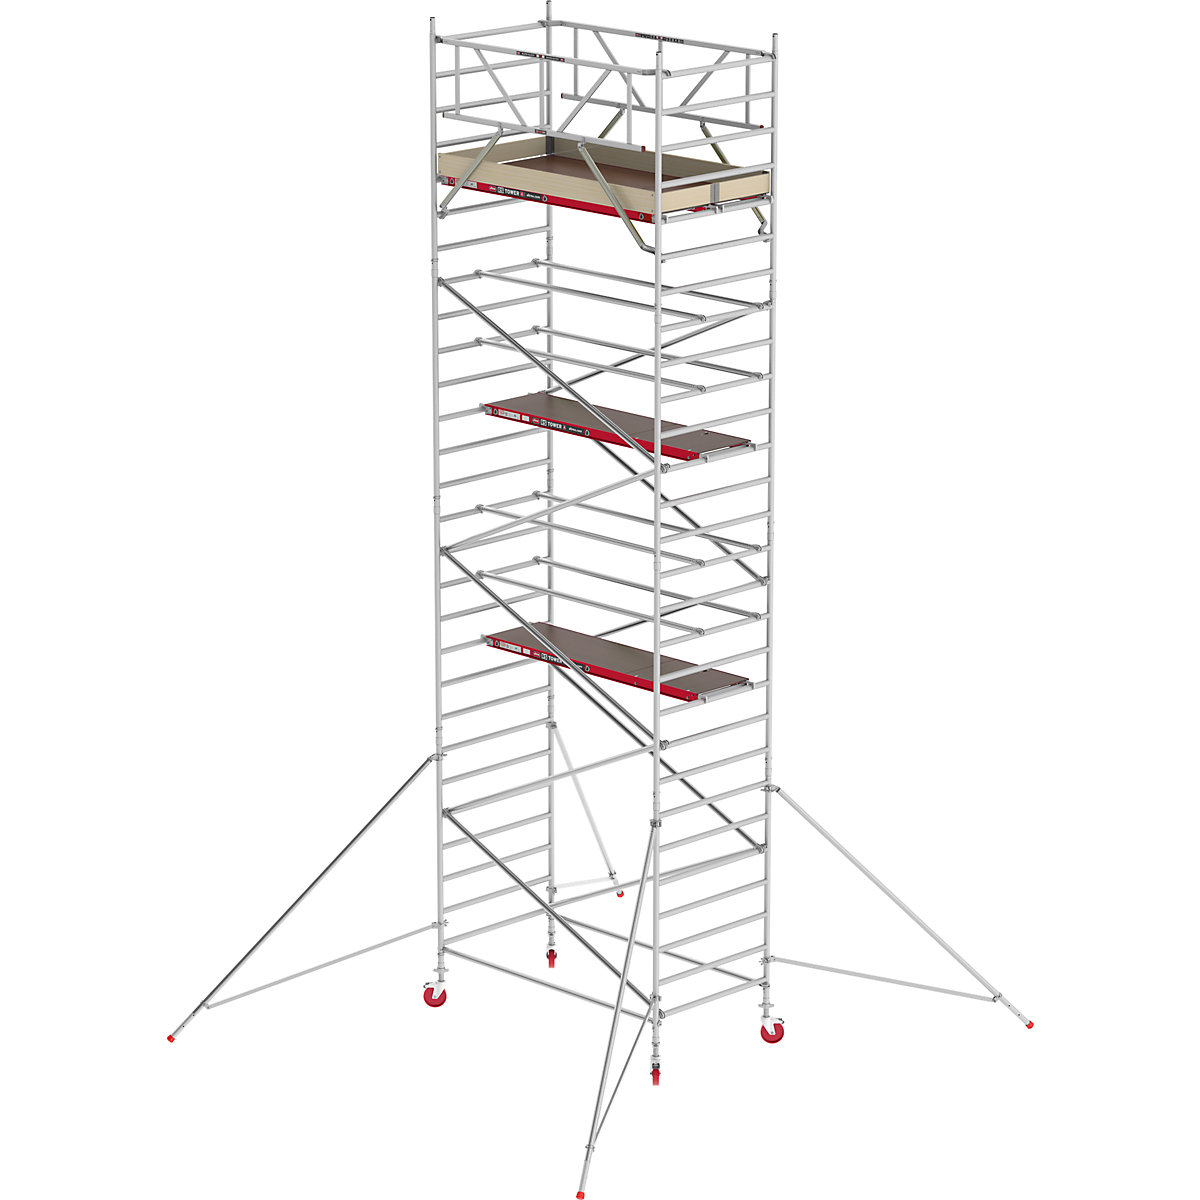 Schelă mobilă RS TOWER 42 lată – Altrex, platformă din lemn, lungime 2,45 m, înălțime de lucru 9,20 m-8